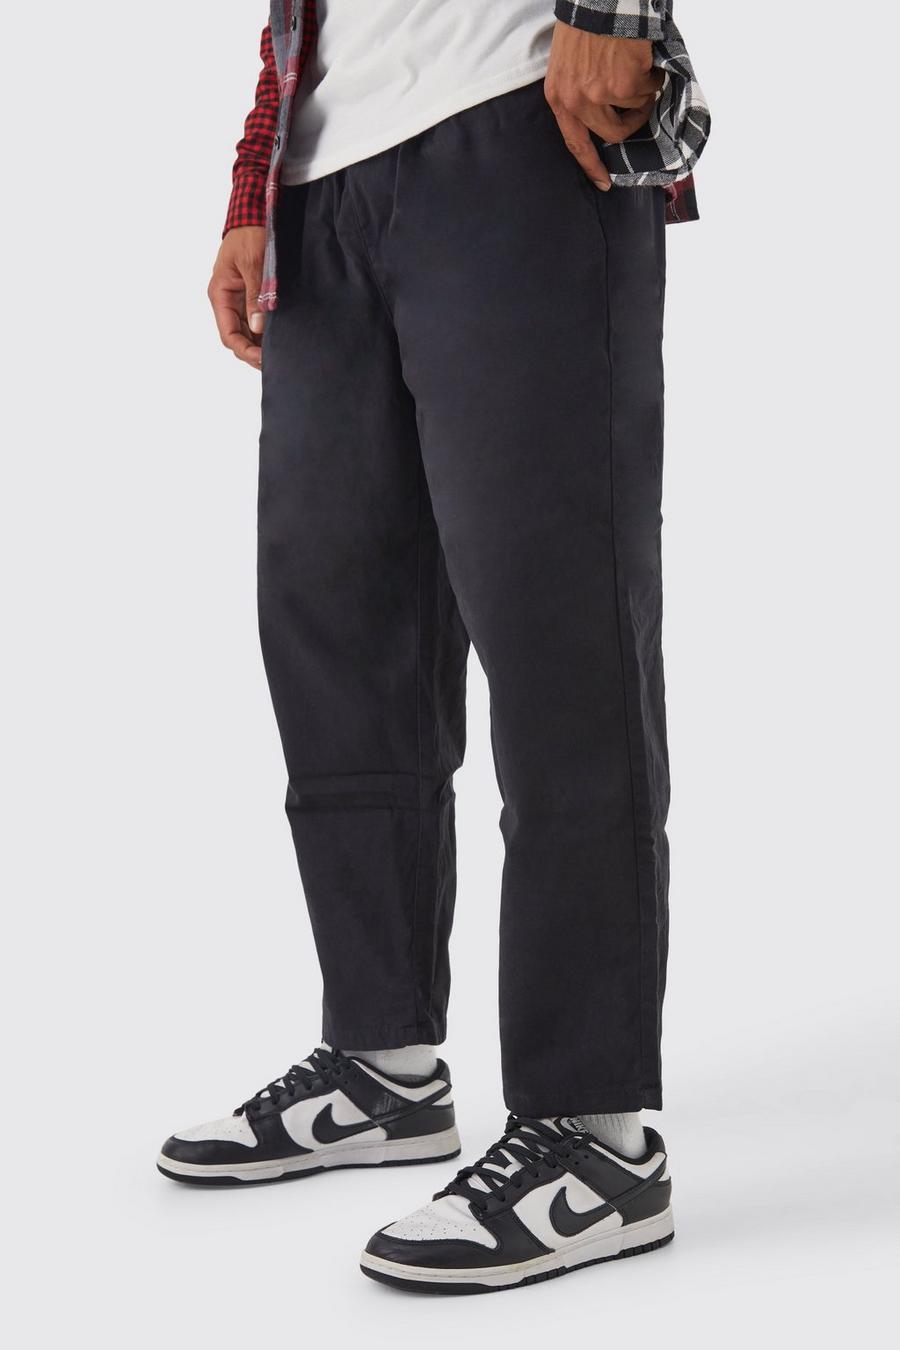 Pantaloni Chino Skate con vita elasticizzata, Black